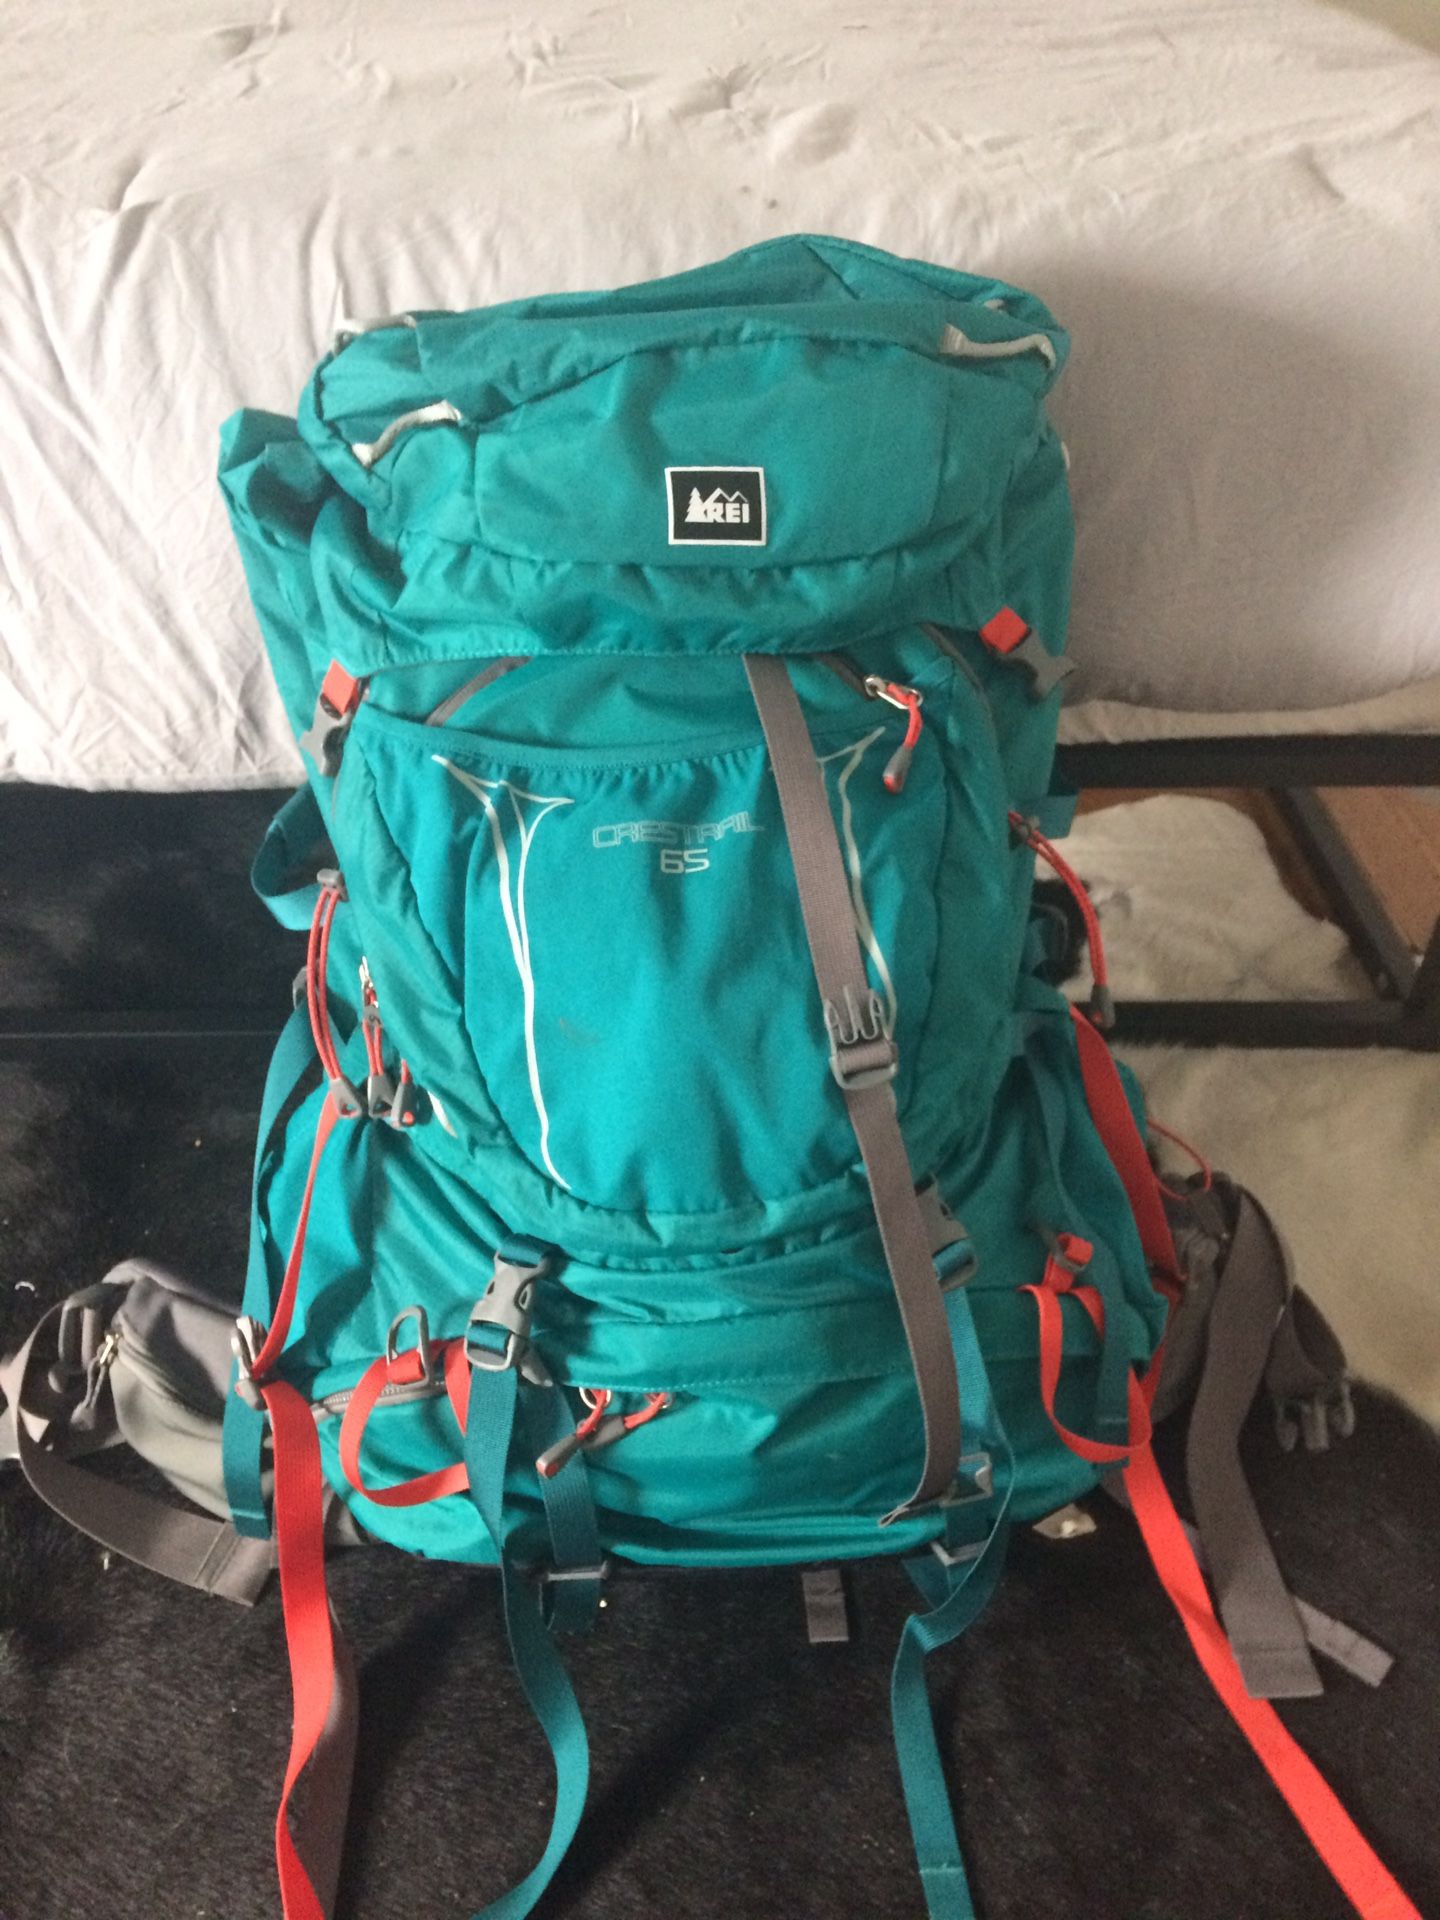 REI 65 hiking backpack